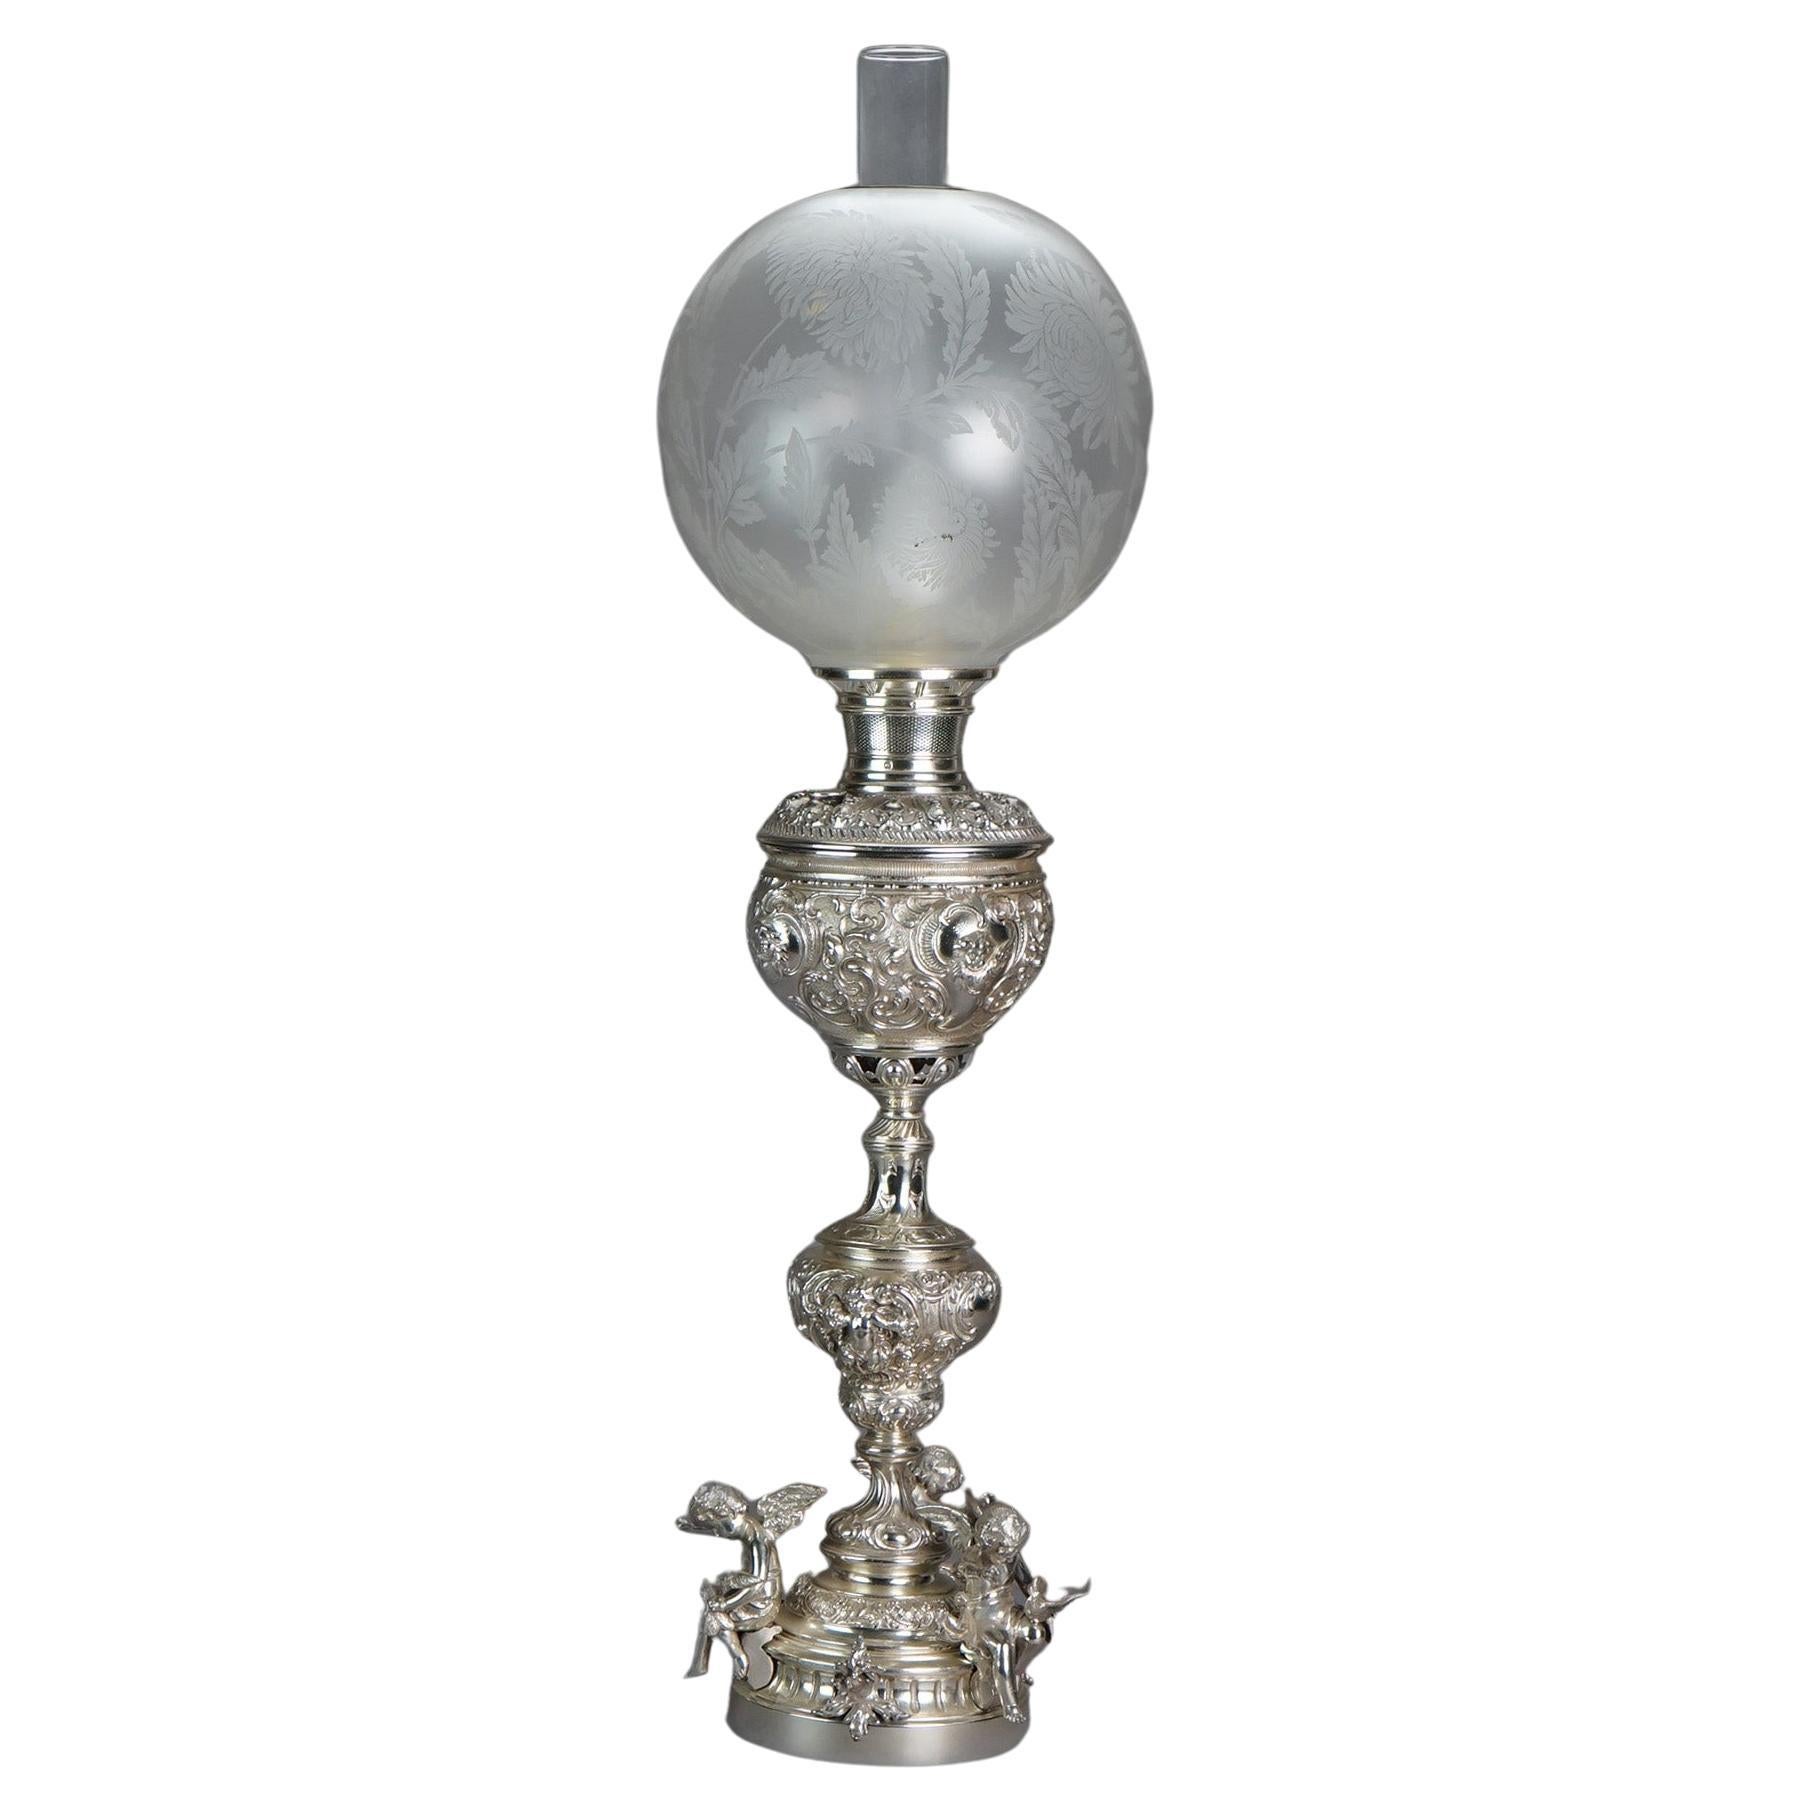 Ancienne lampe de salon rococo figurative en métal argenté avec chérubins ailés, vers 1890